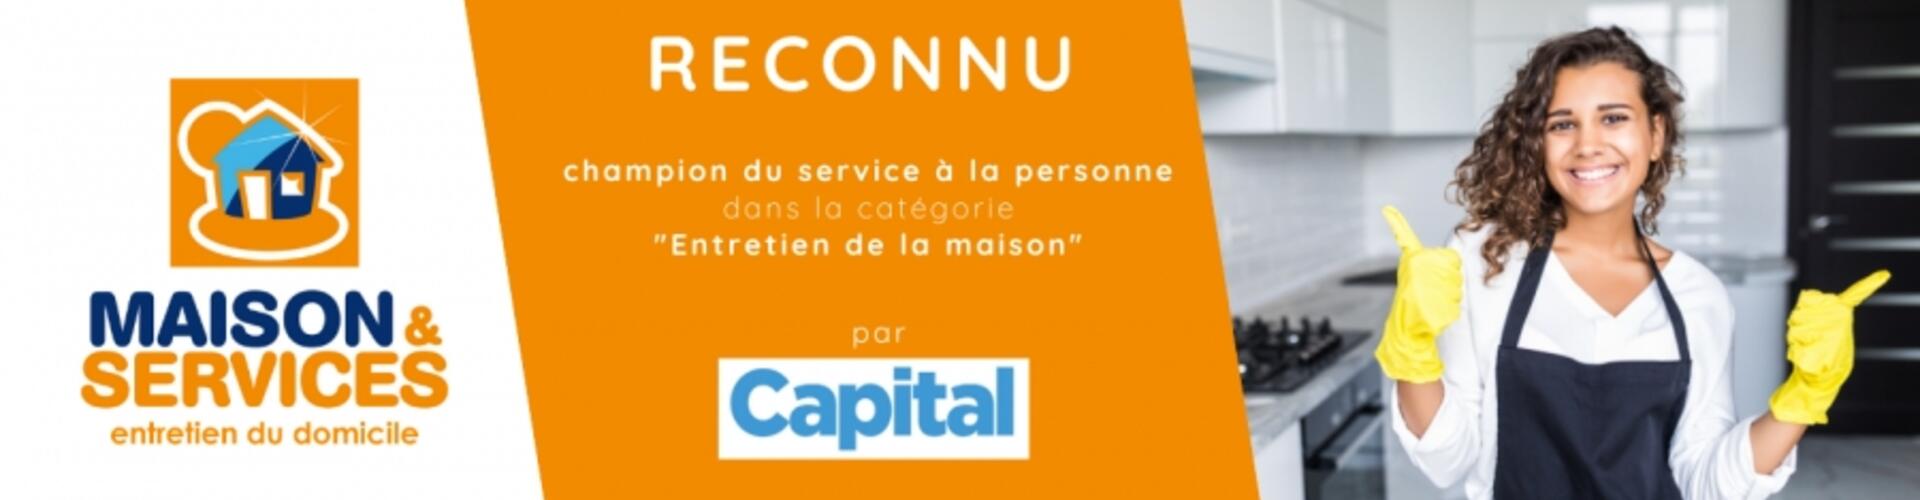 MAISON ET SERVICES est reconnu dans le palmarès des meilleures enseignes de France comme le champion du service à la personne dans la catégorie "entretien de la maison"